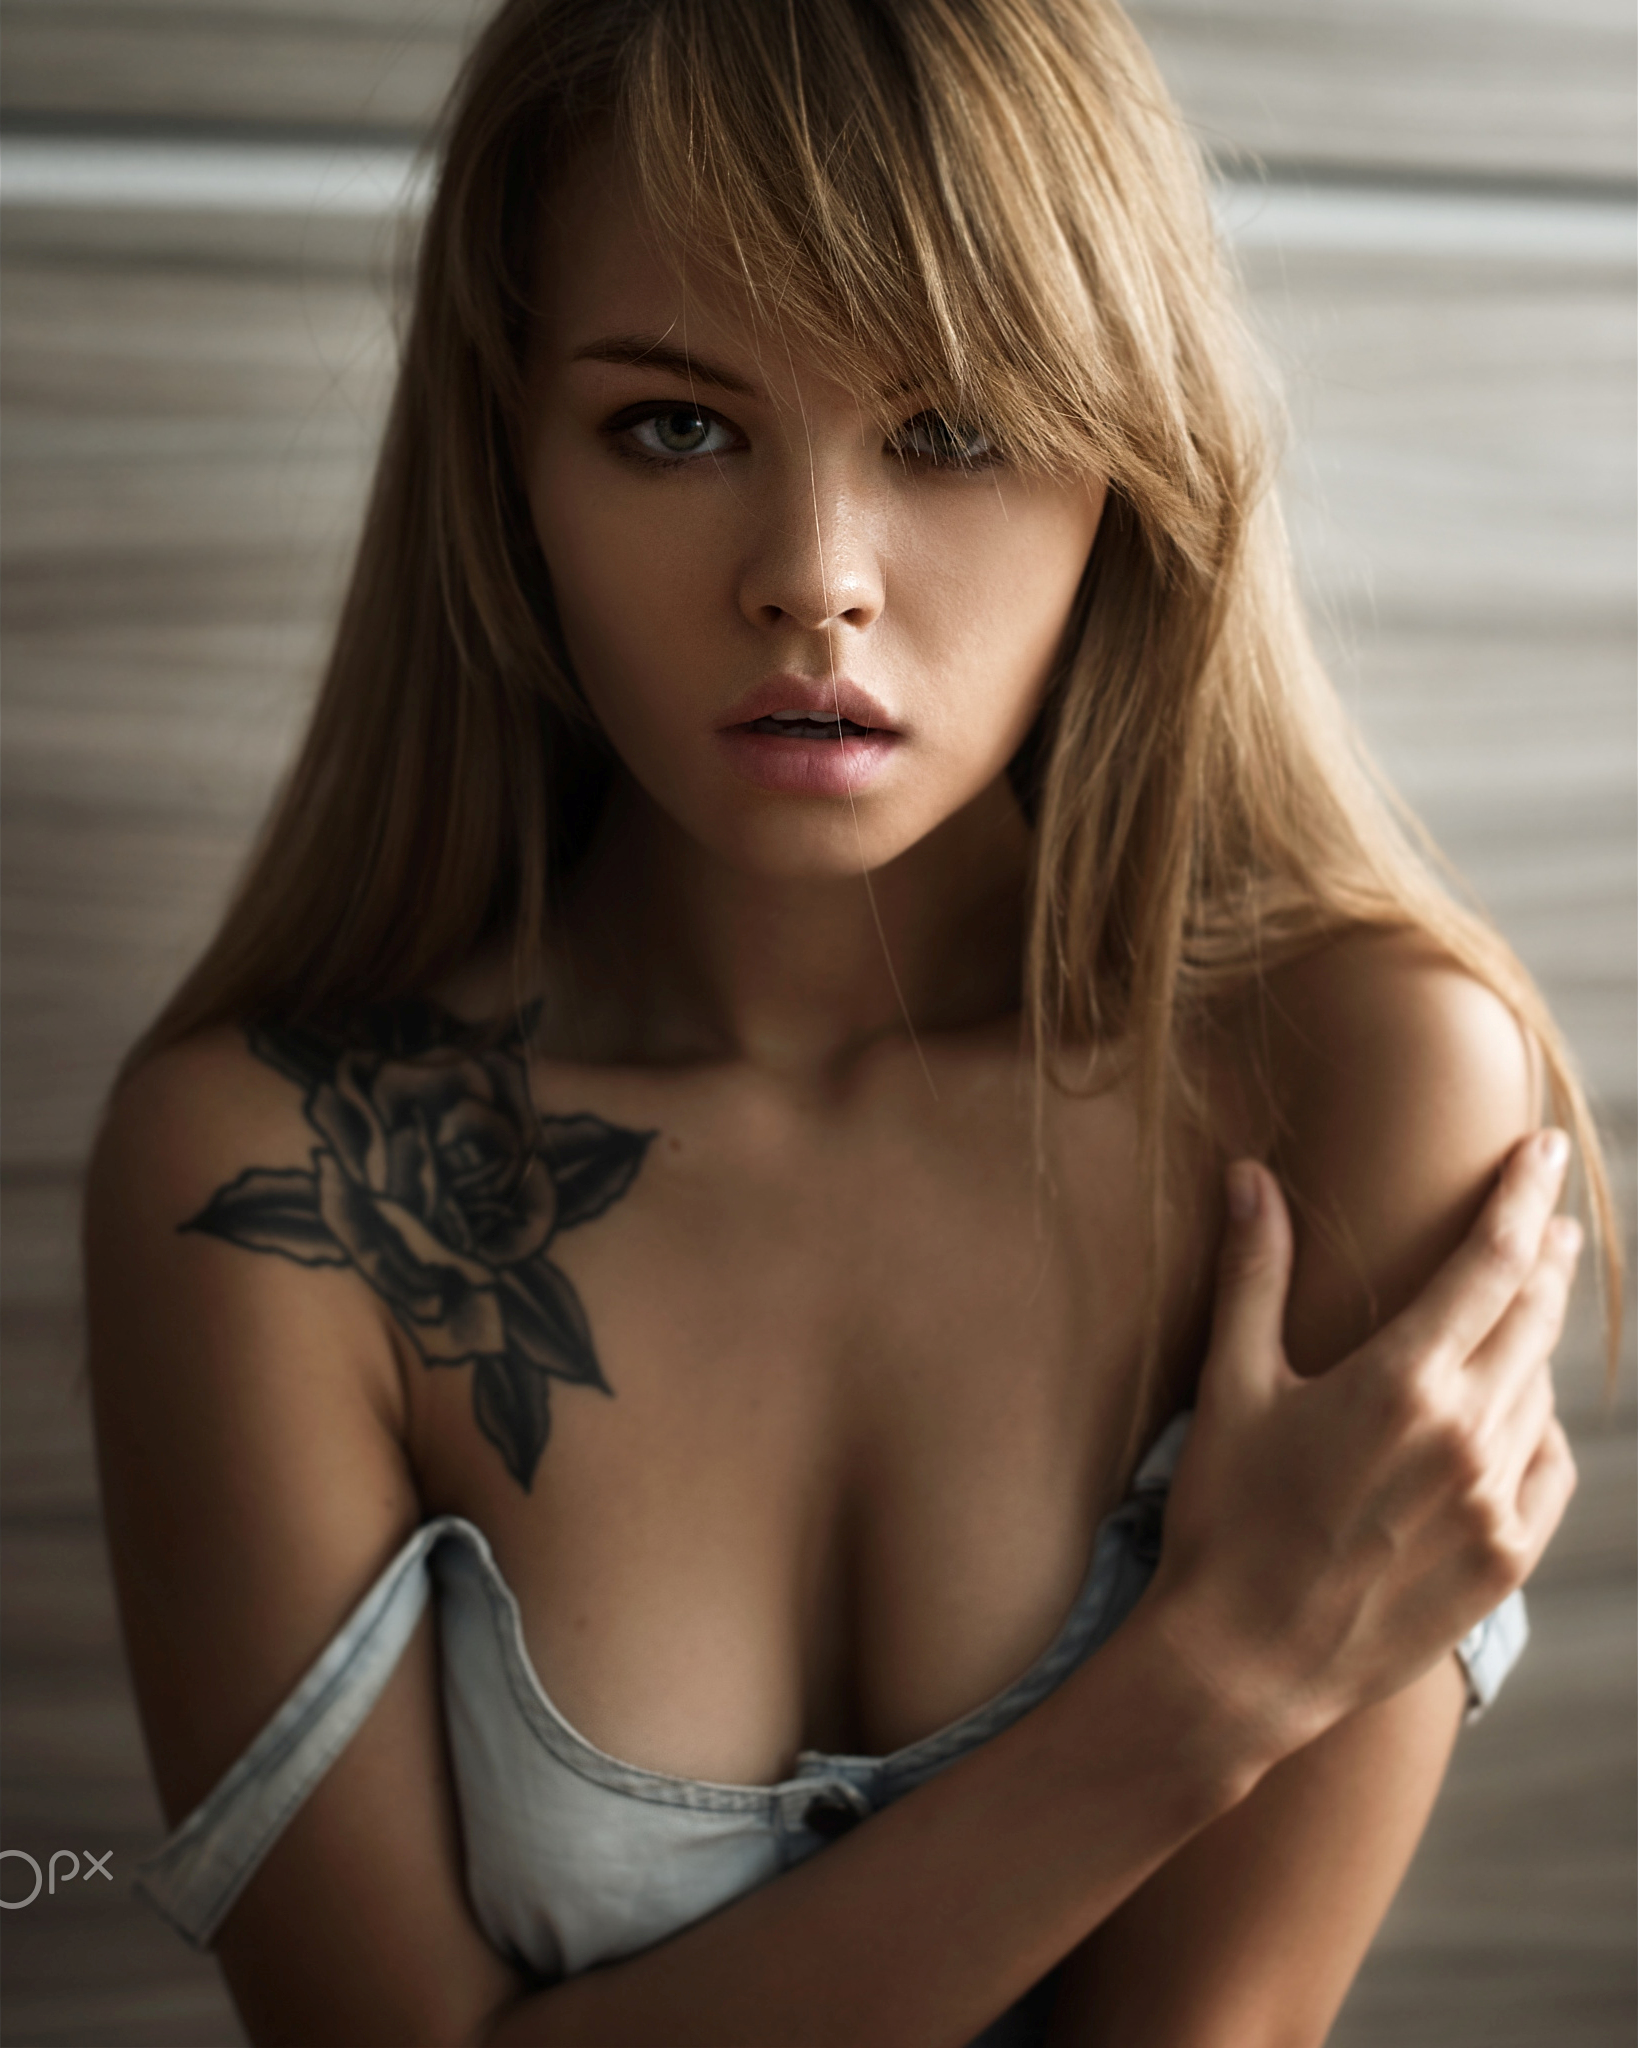 anastasiya-scheglova-naked-erotic-photo-by-dmitry-yushkov-06